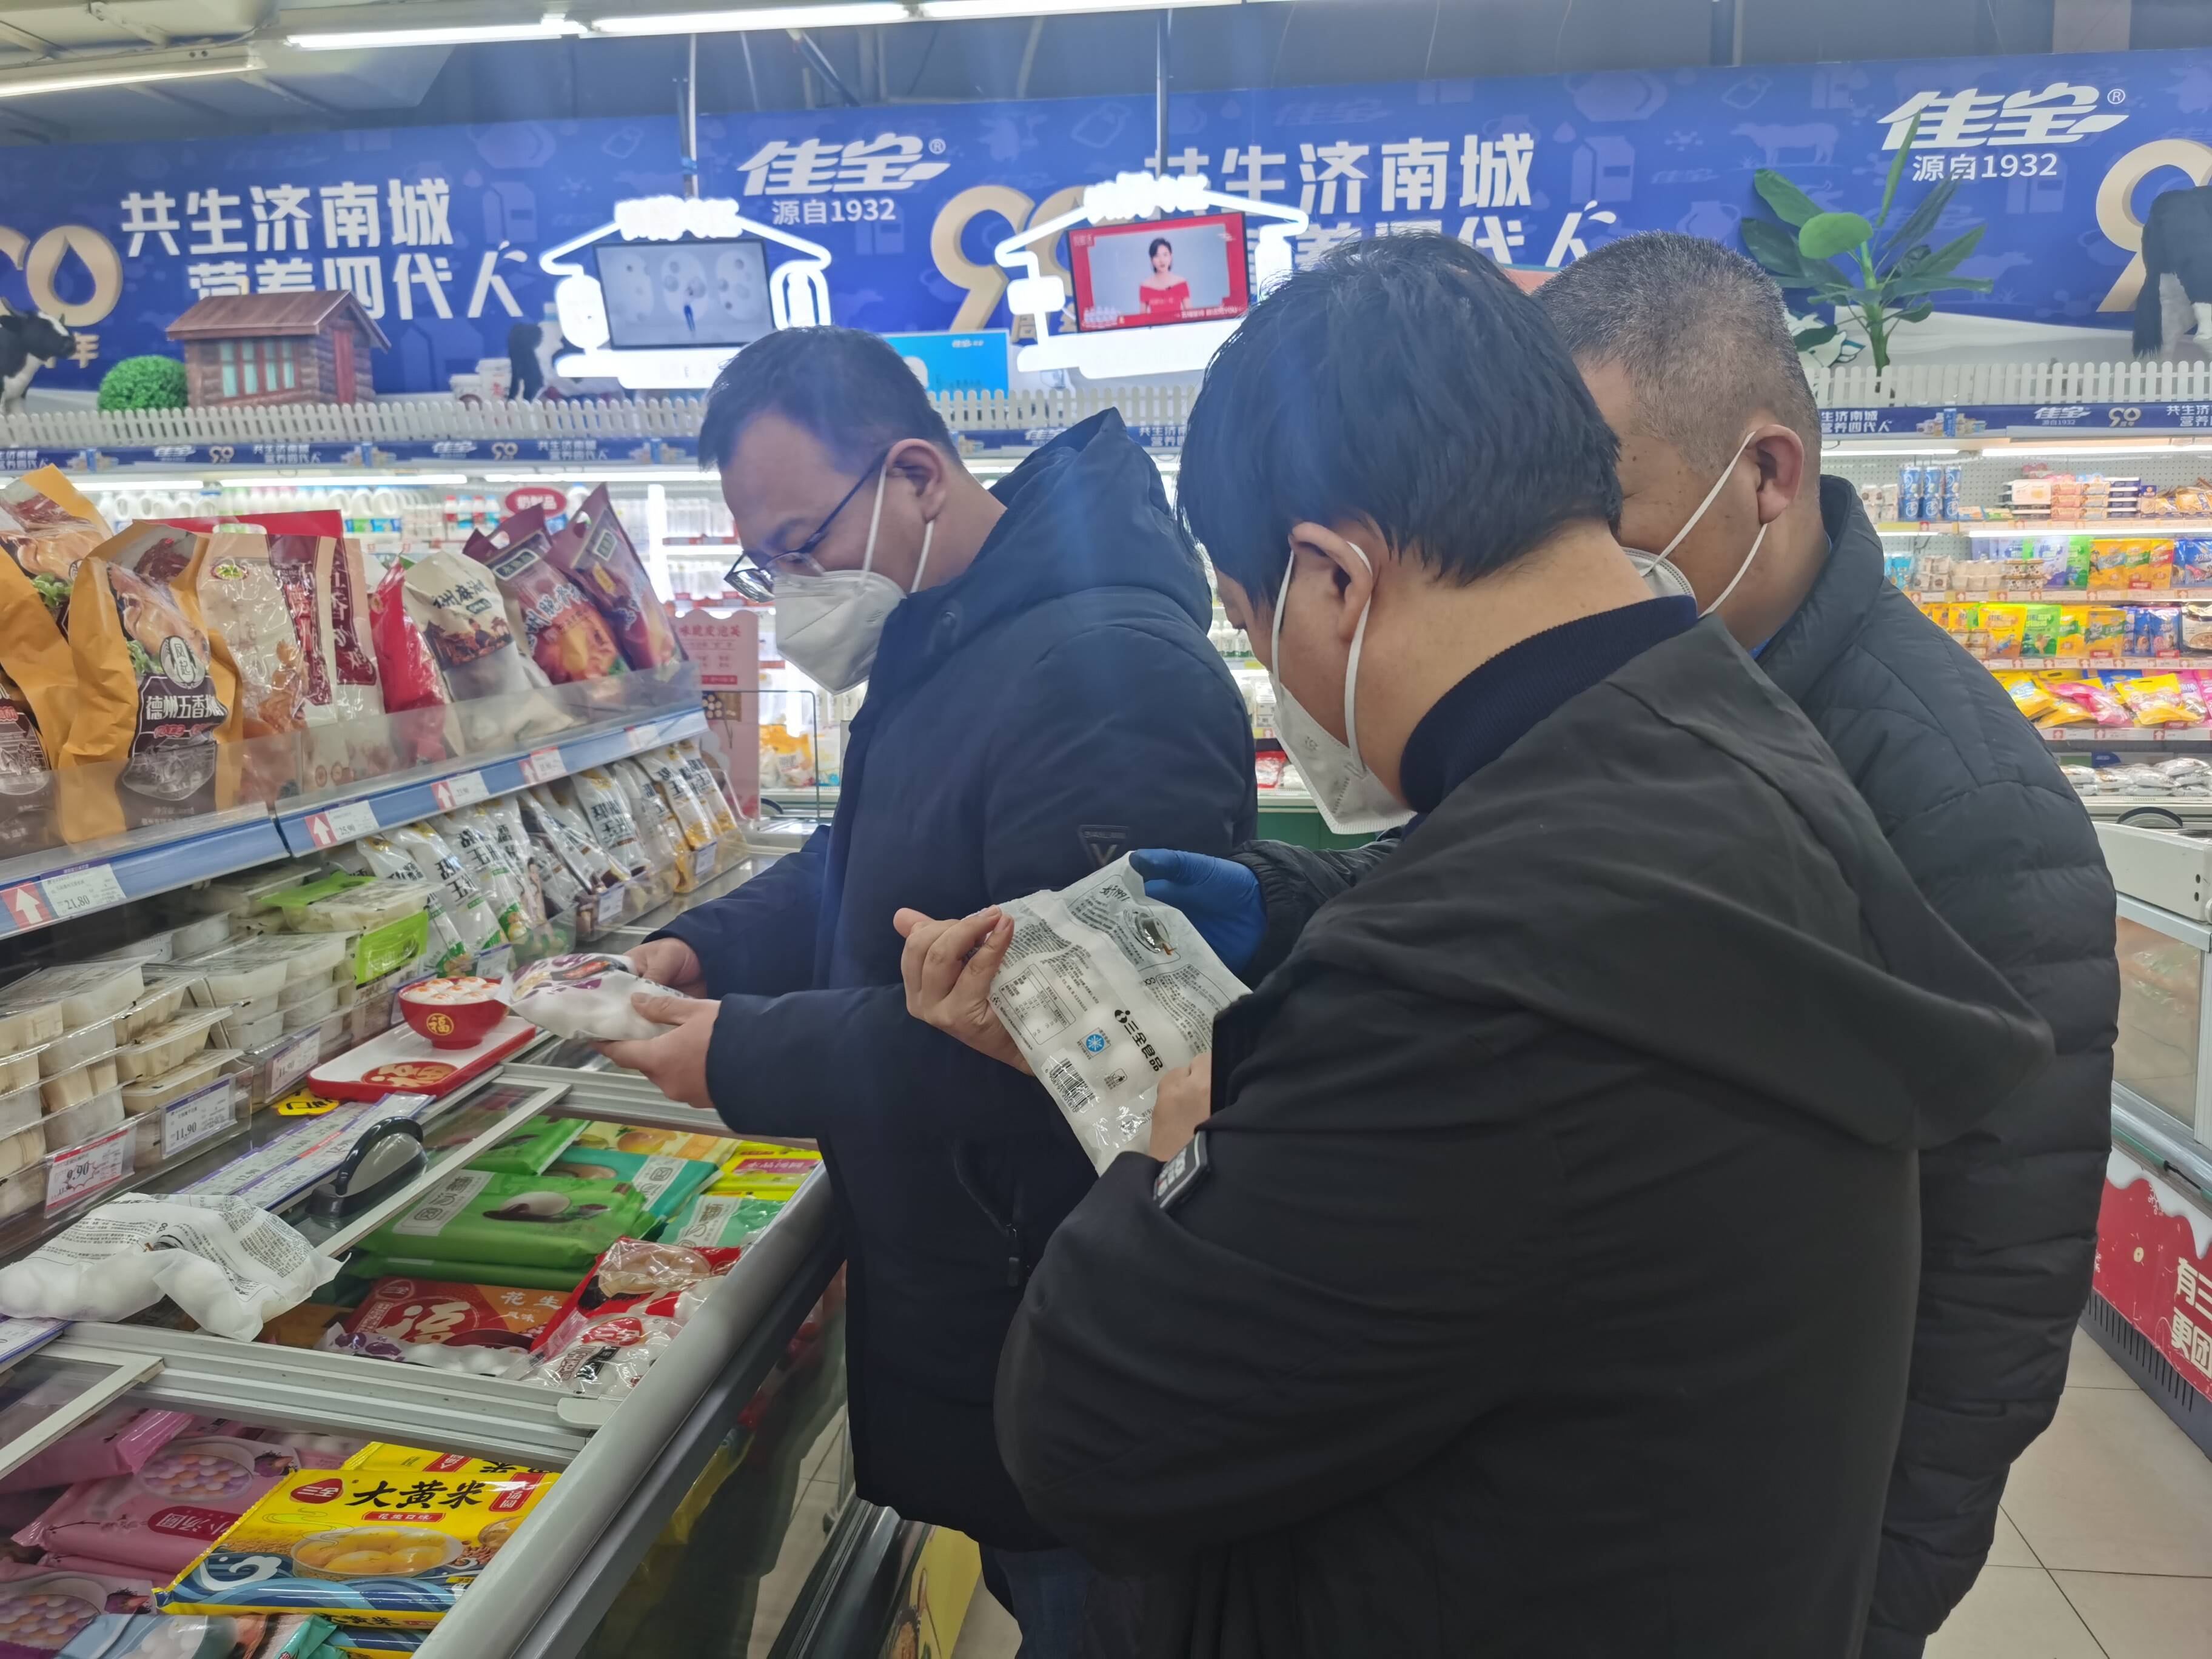 济南市开展元宵专项食品抽检 并发布消费提示